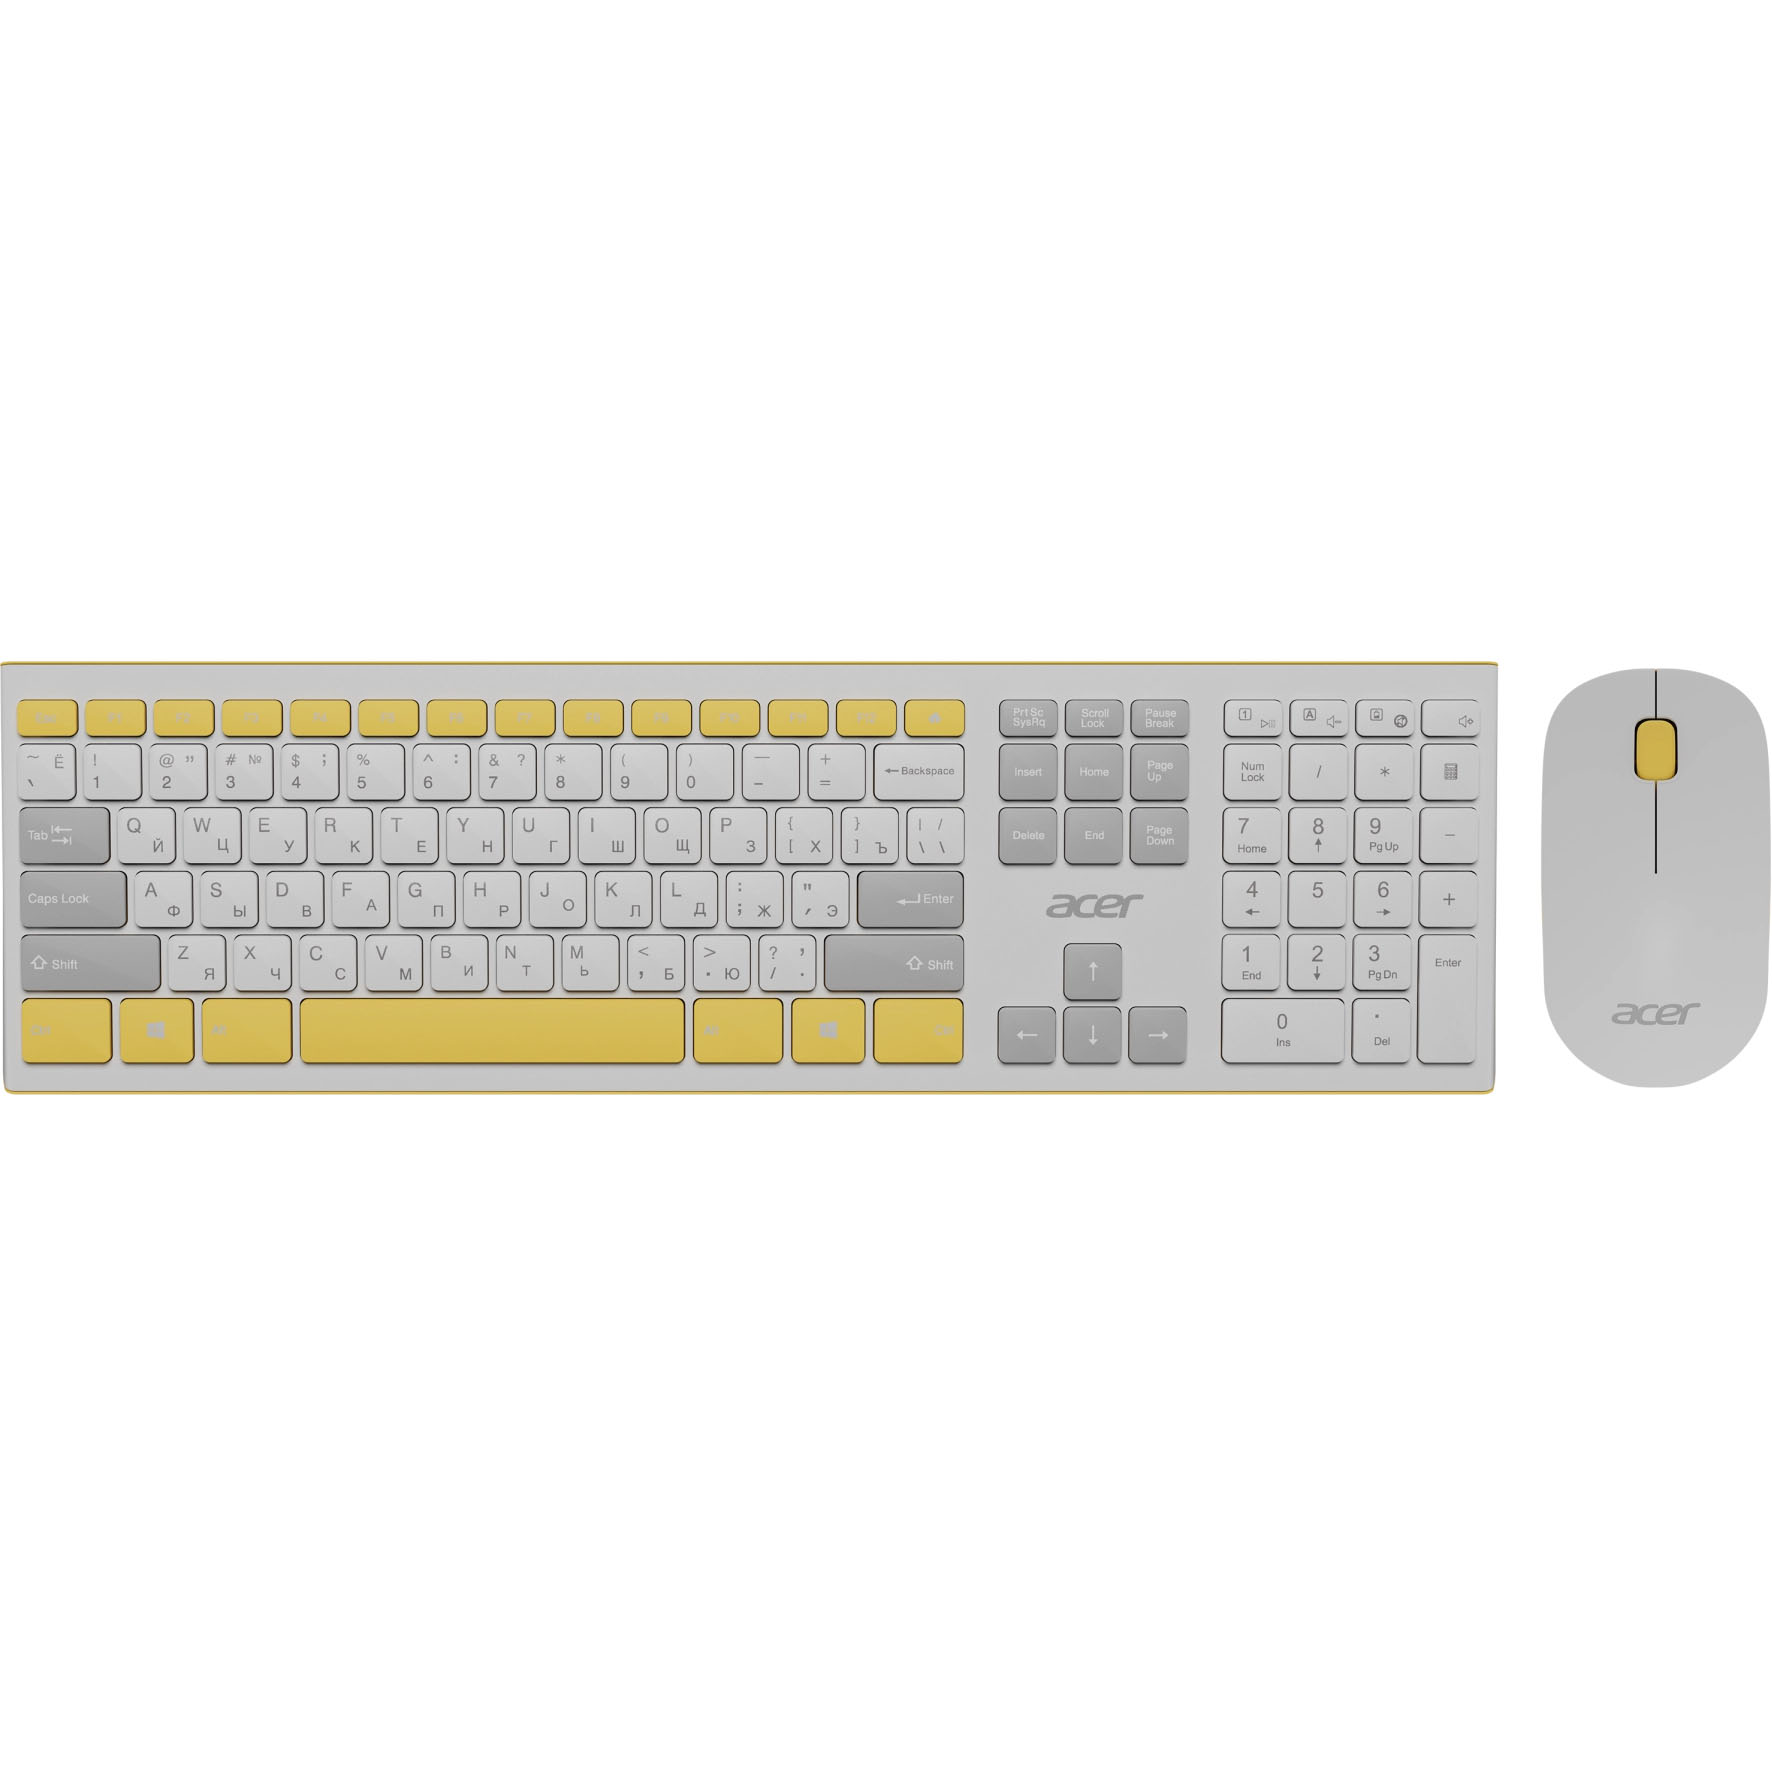 Комплект клавиатуры и мыши Acer OCC200 белый, желтый клавиатура мышь acer occ200 бежевый коричневый zl accee 004